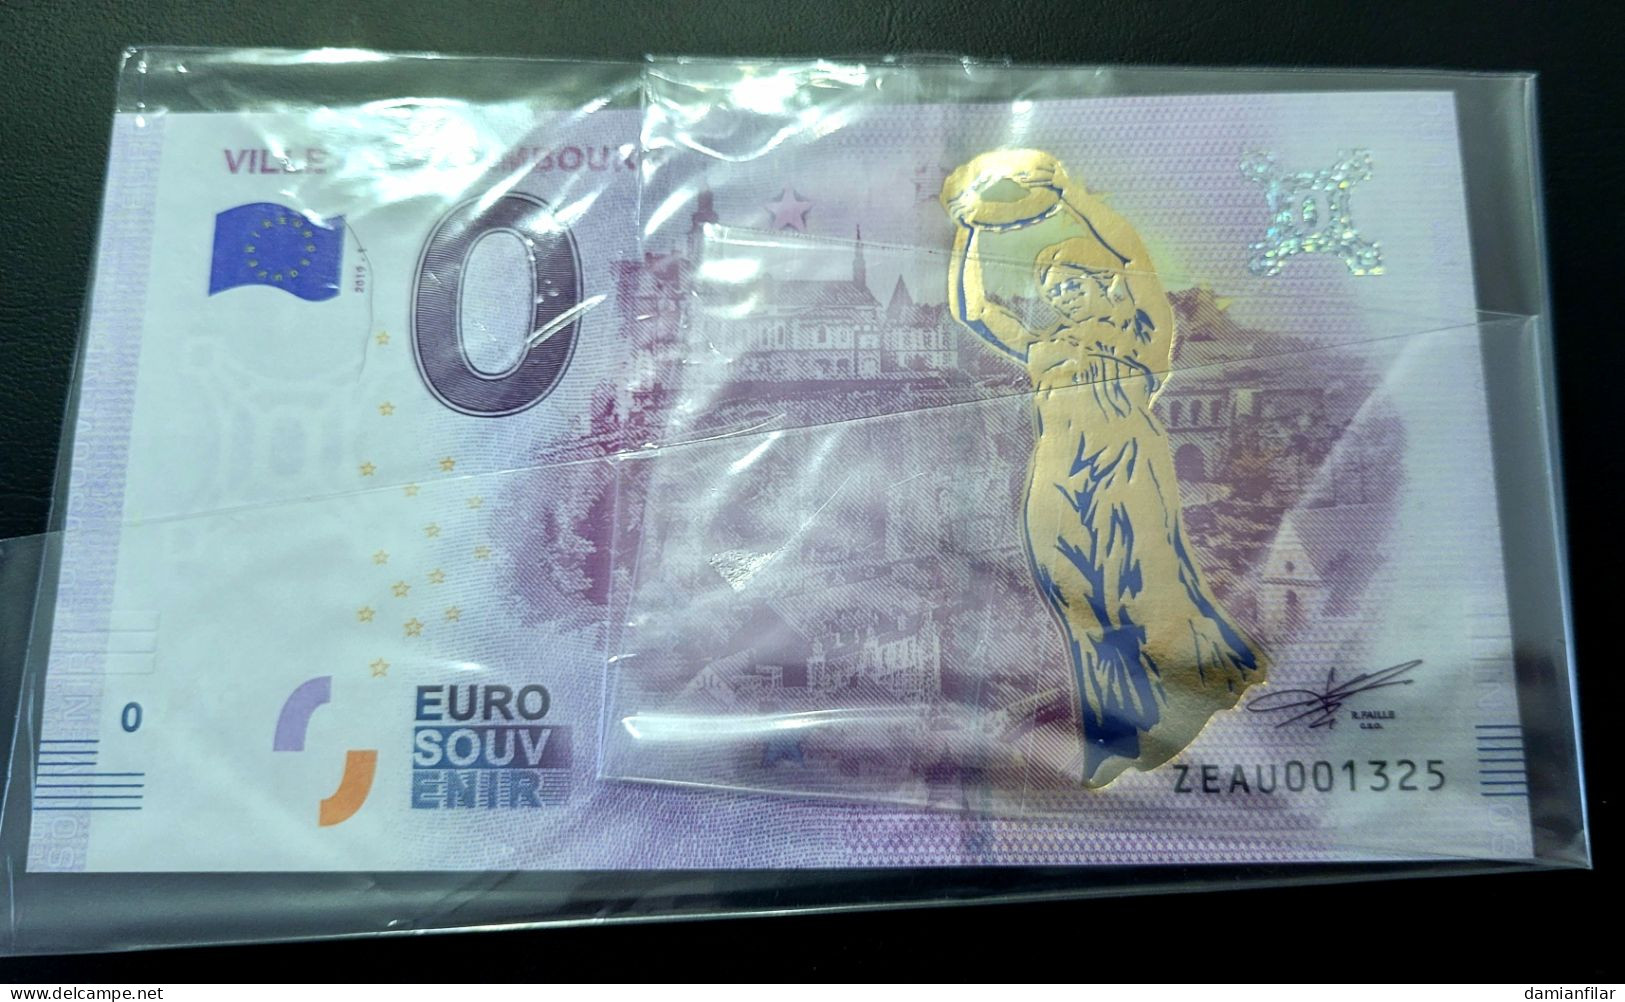 0 Euro Souvenir Ville De Luxembourg ZEAU 2019-1 Gold - Lussemburgo